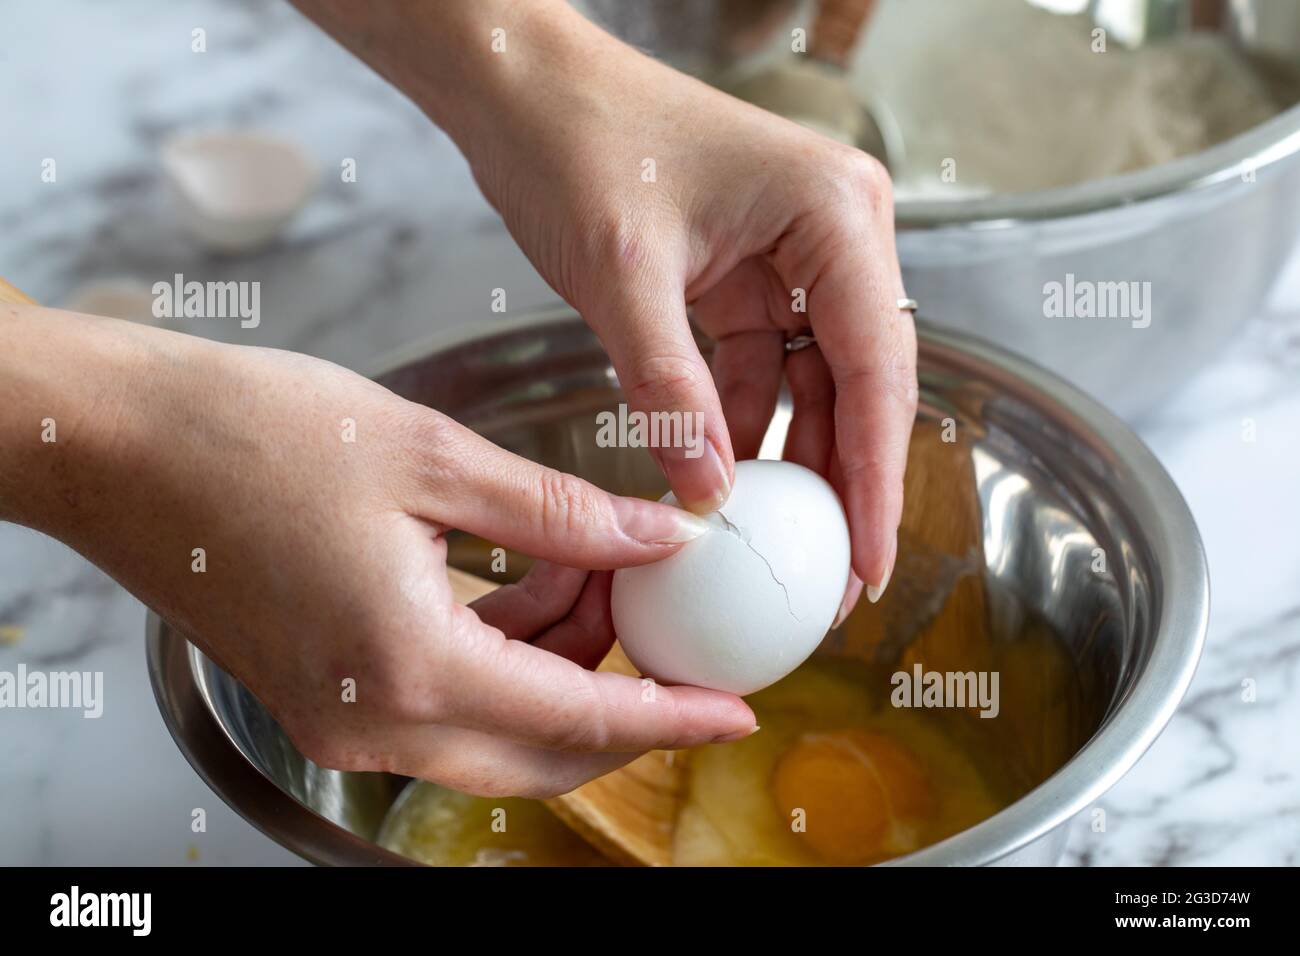 Die Hand einer Frau, die ein Ei über einer gewickelten Metallmischschüssel mit natürlichem Licht aufbricht Stockfoto